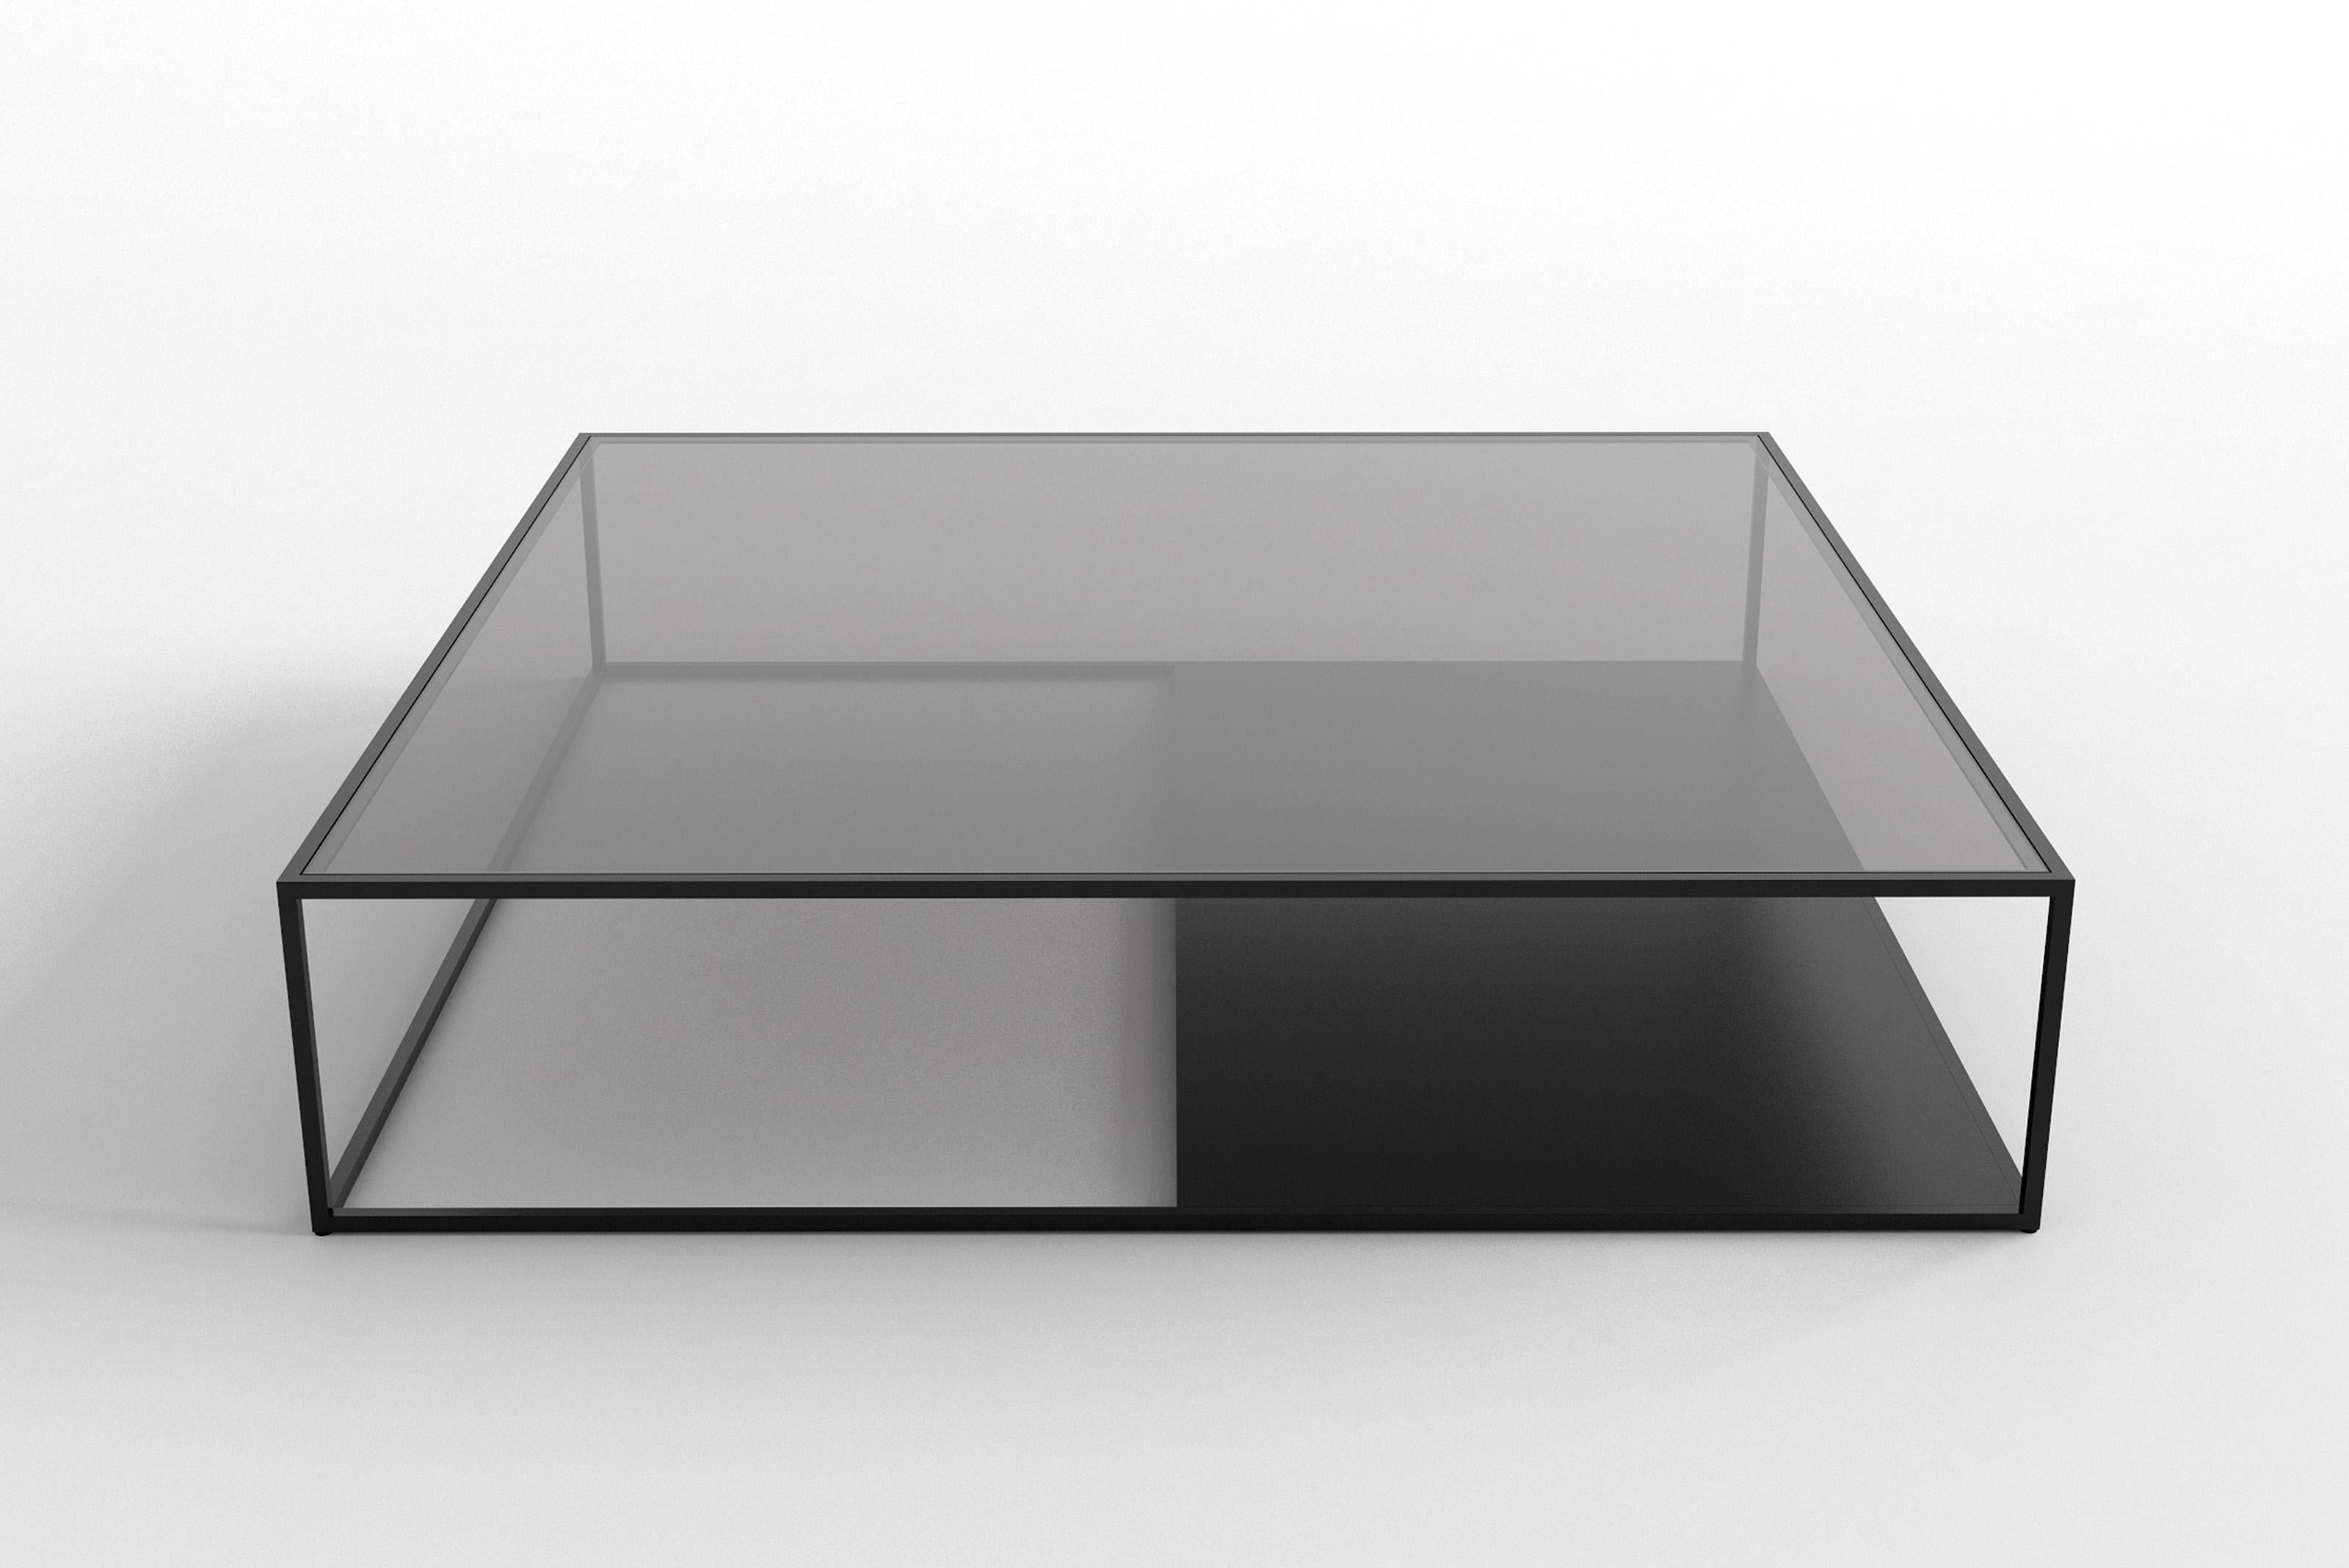 Half & Half Version B Couchtisch von Phase Design
Abmessungen: T 121,9 x B 121,9 x H 26,7 cm. 
MATERIALIEN: Pulverbeschichtetes Metall und Glas. 

Pulverbeschichtete Vierkantstahlstange, erhältlich mit sternförmiger oder grauer Glasplatte.